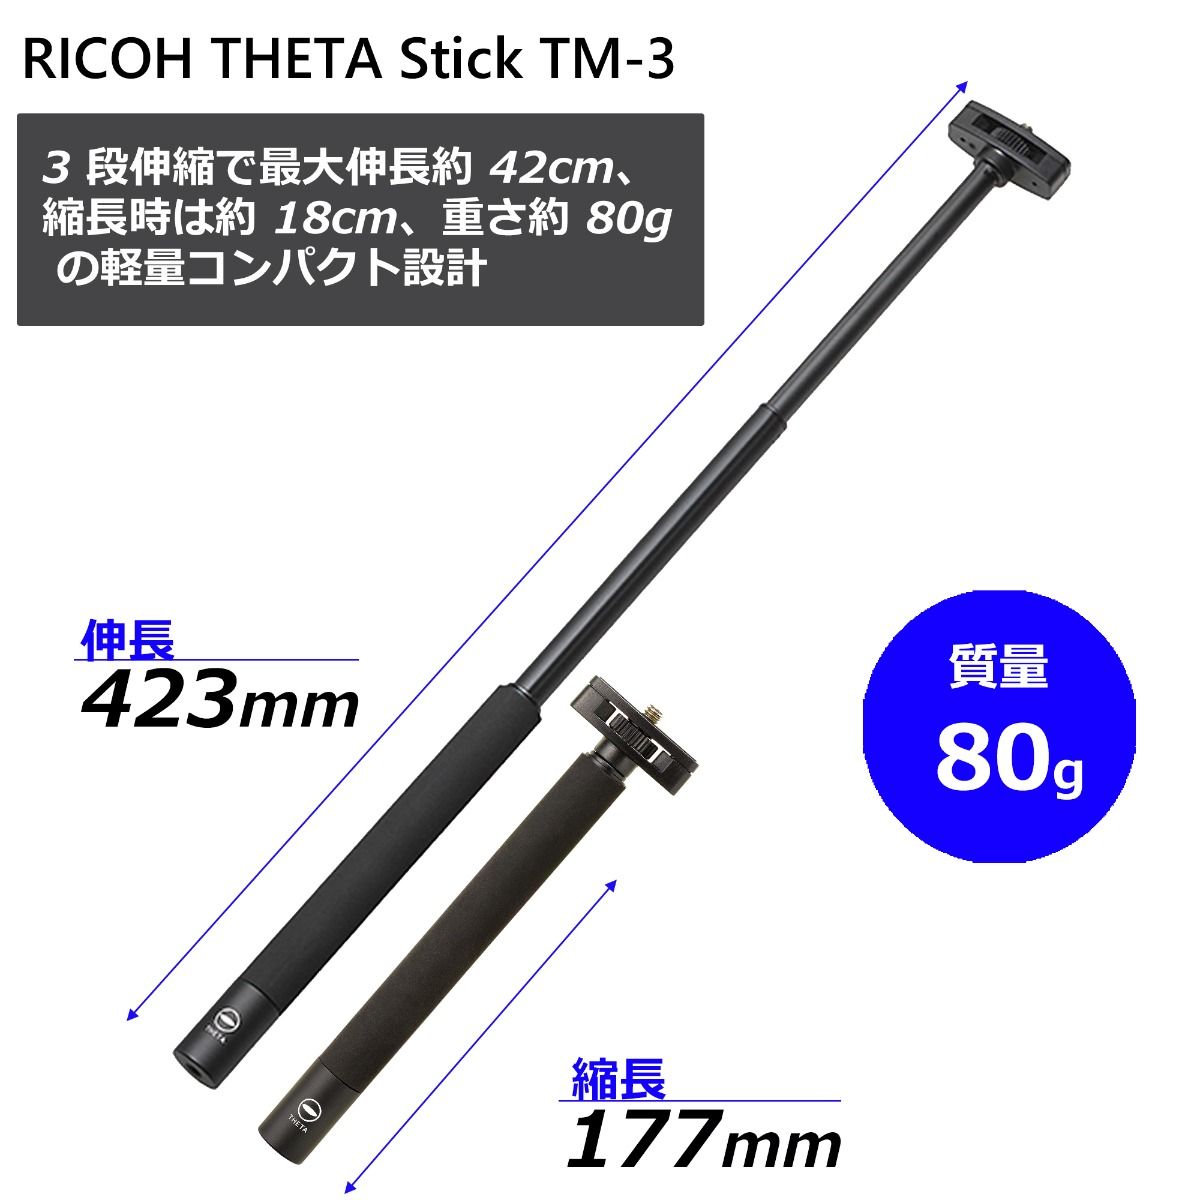 【アウトレット】 リコー THETA Stick TM-3 RICOH THETA（シータ）専用自撮り棒 小型軽量タイプ